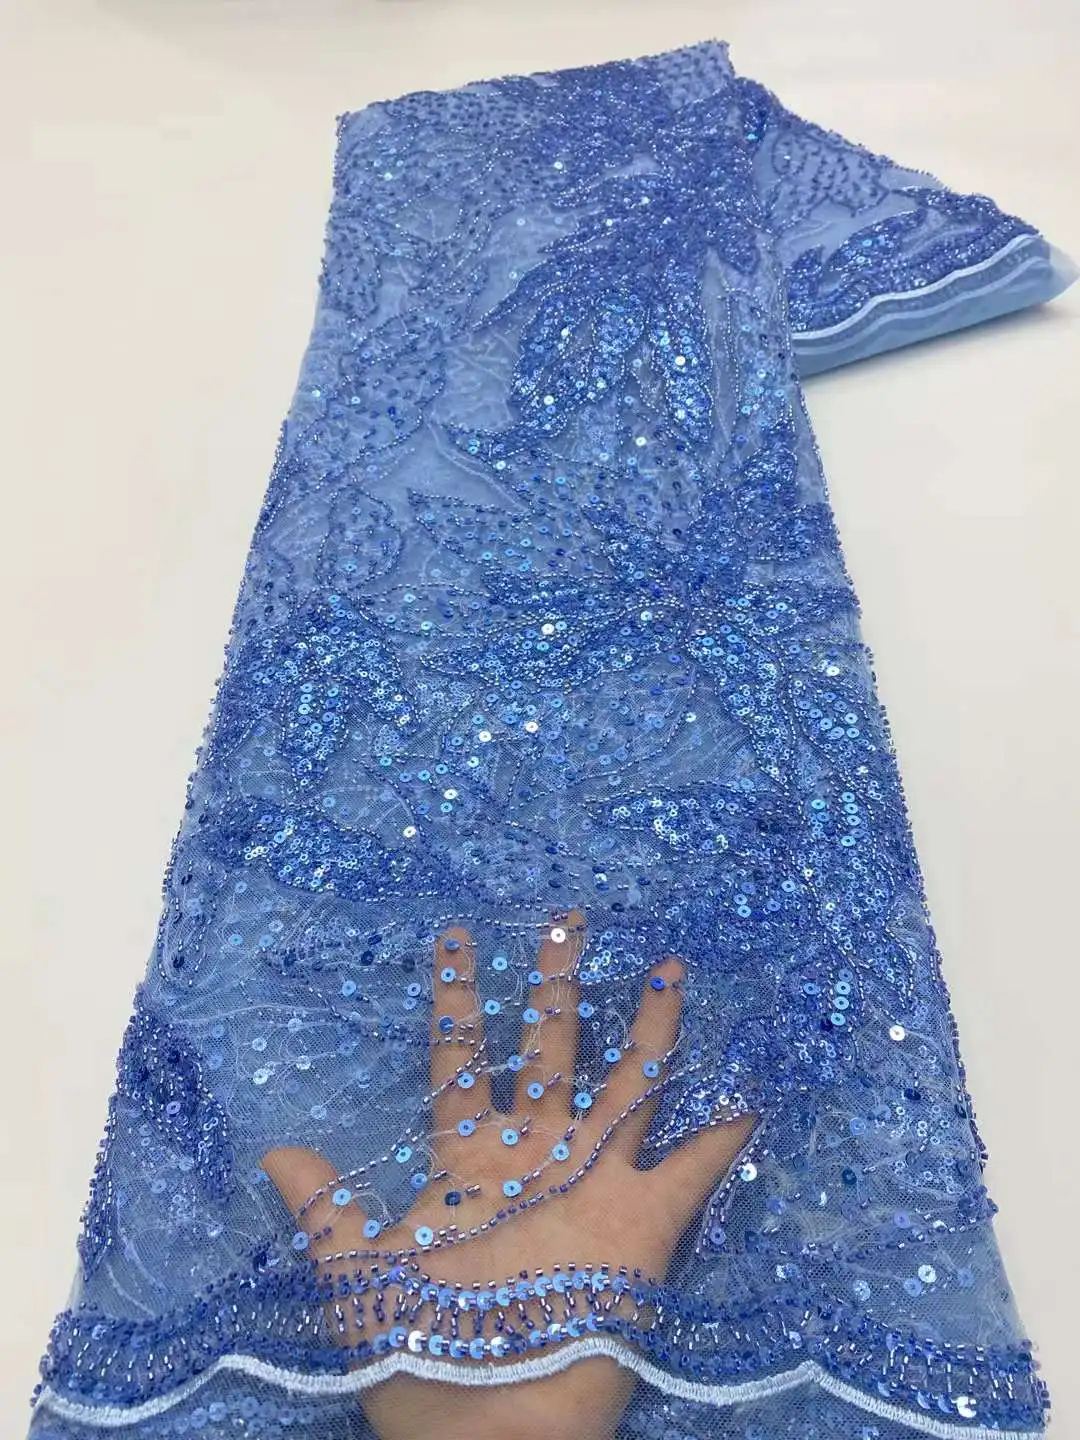 

2022 нигерийский дизайн, небесно-голубой высококачественный тюль с блестками ручной работы, кружево, африканские Роскошные бусины, 5 ярдов ткани для женского платья для выпускного вечера